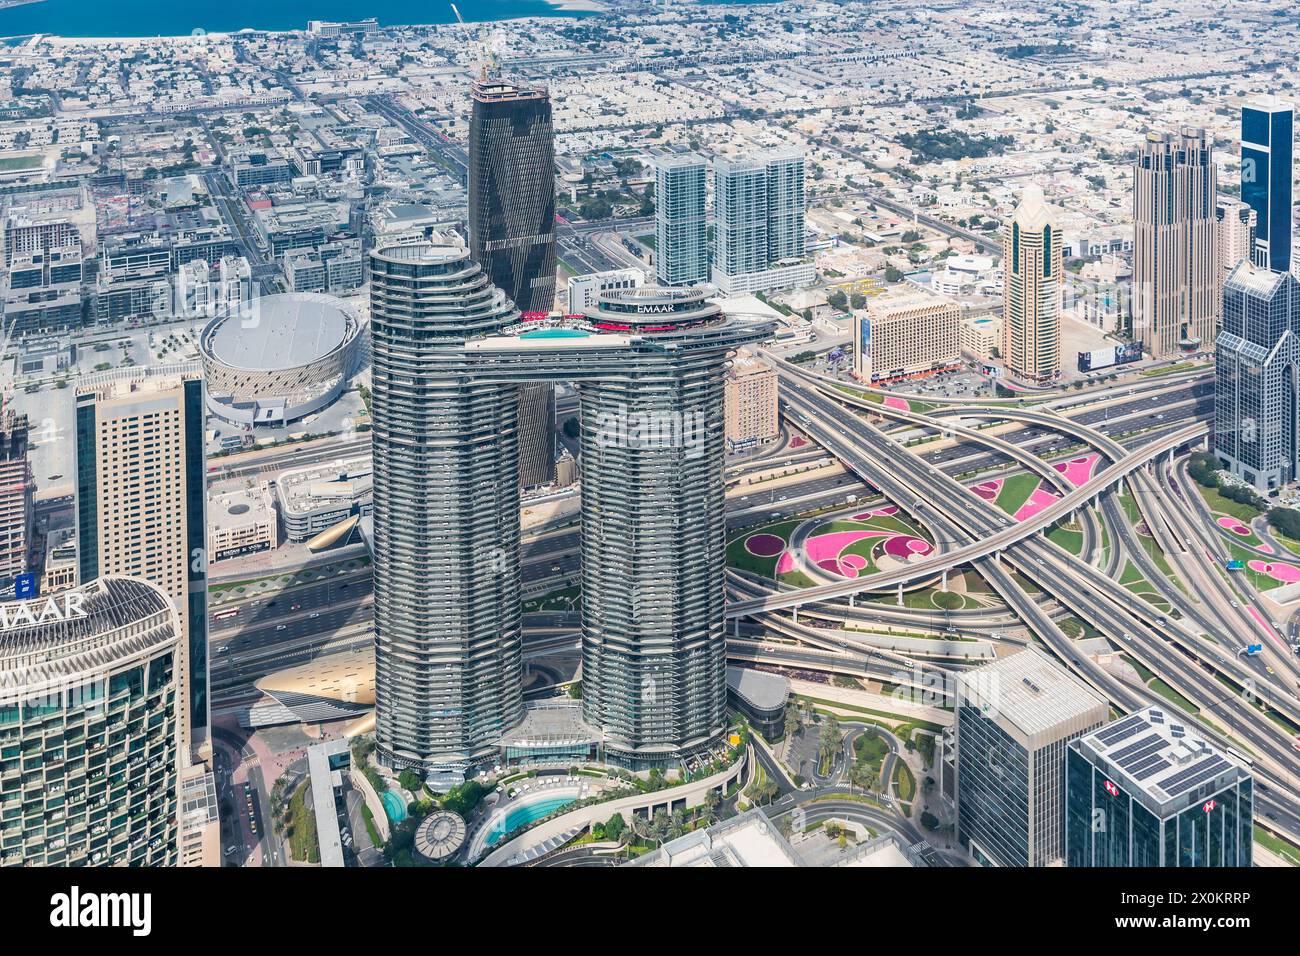 Blick auf die Skylines von der Besucherplattform in The Top im 124. Stock, in einer Höhe von 450 m, Burj Khalifa, das höchste Gebäude der Welt, 830 m hoch, Wolkenkratzer, Skyline, Dubai, Vereinigte Arabische Emirate, Naher Osten, Asien Stockfoto